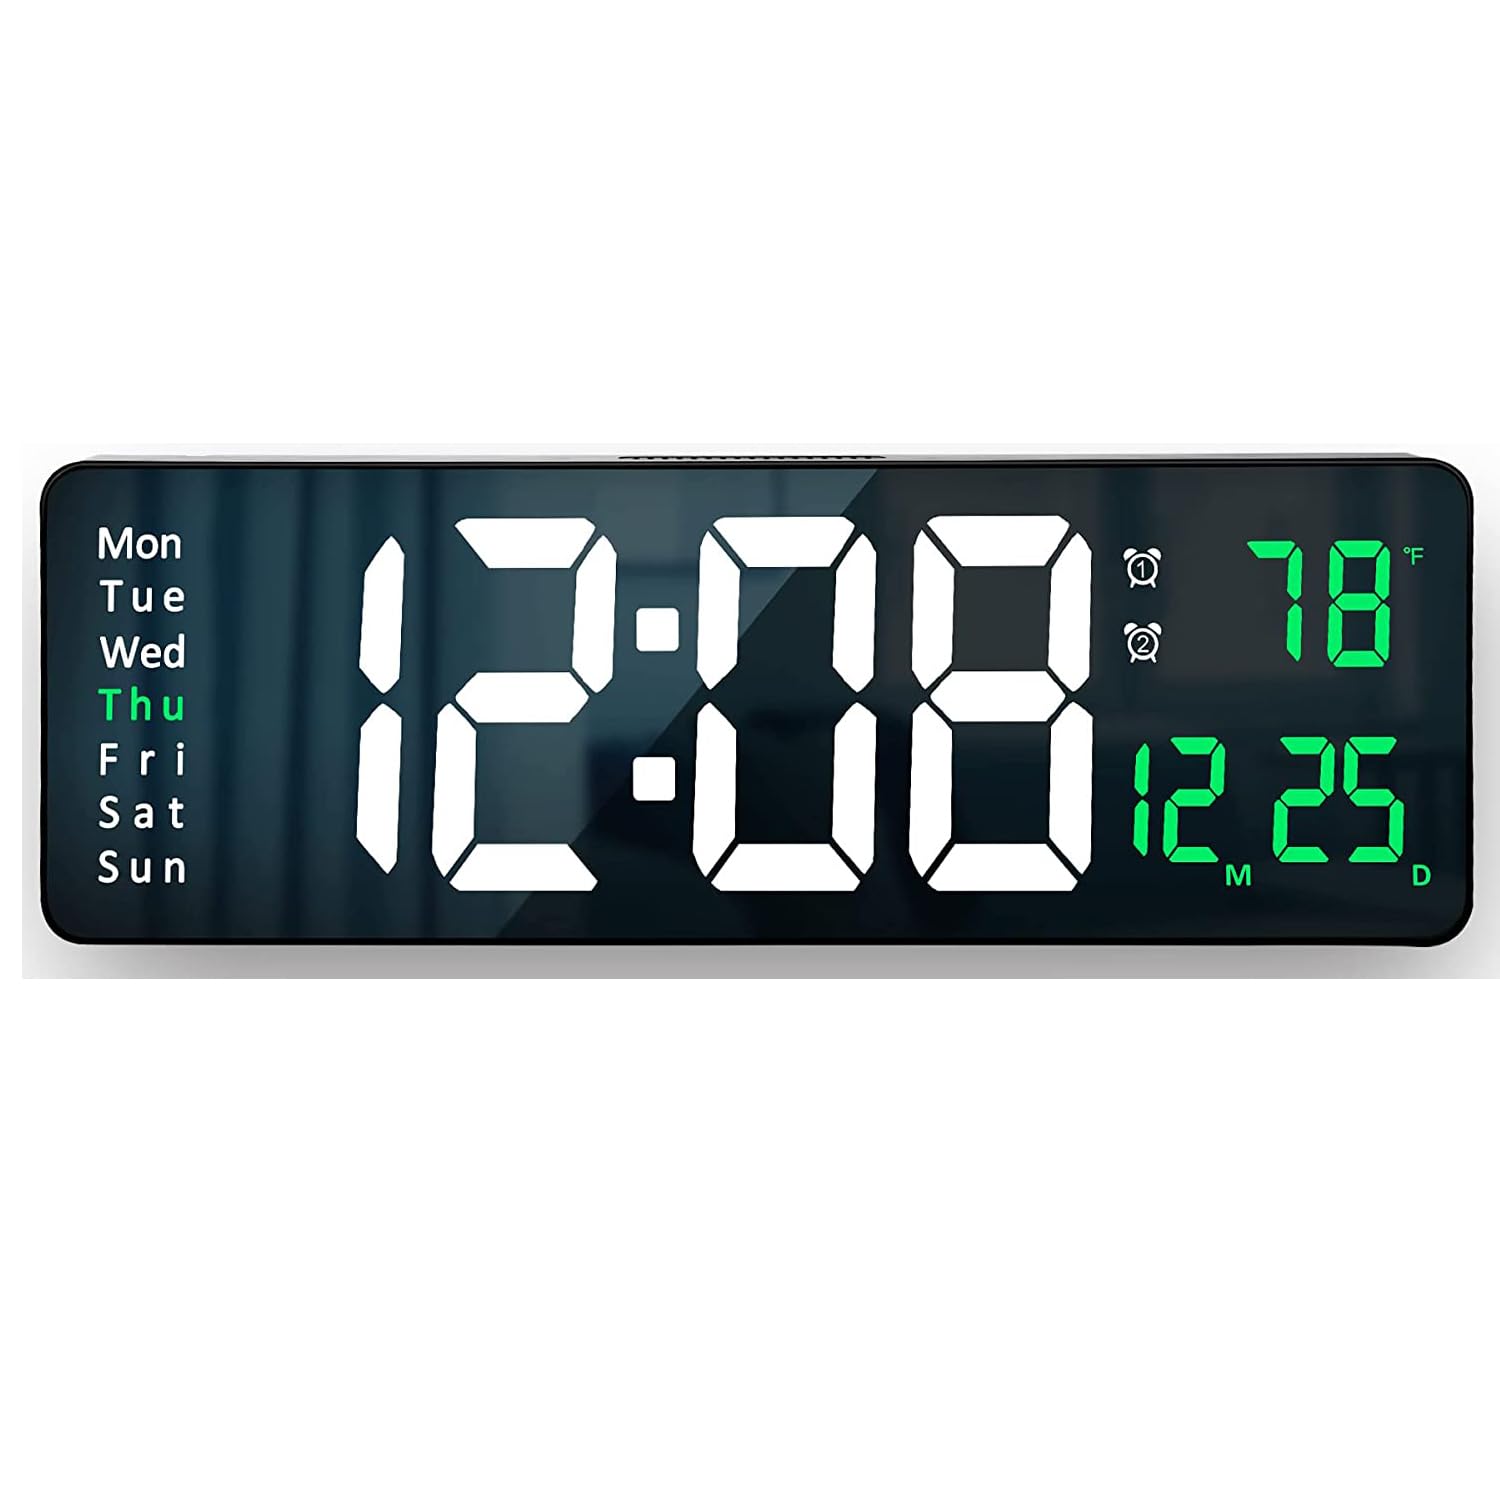 16.2インチ大画面 LEDデジタル時計 壁掛け 置き時計 卓上 大文字 大型 目覚まし時計 電子時計 おしゃれ 明るさ調整可能 気温/日付表示 アラーム カウントダウン カウントアップ ストップウォッチ リモコン付き USB給電 リビングルーム キッチン